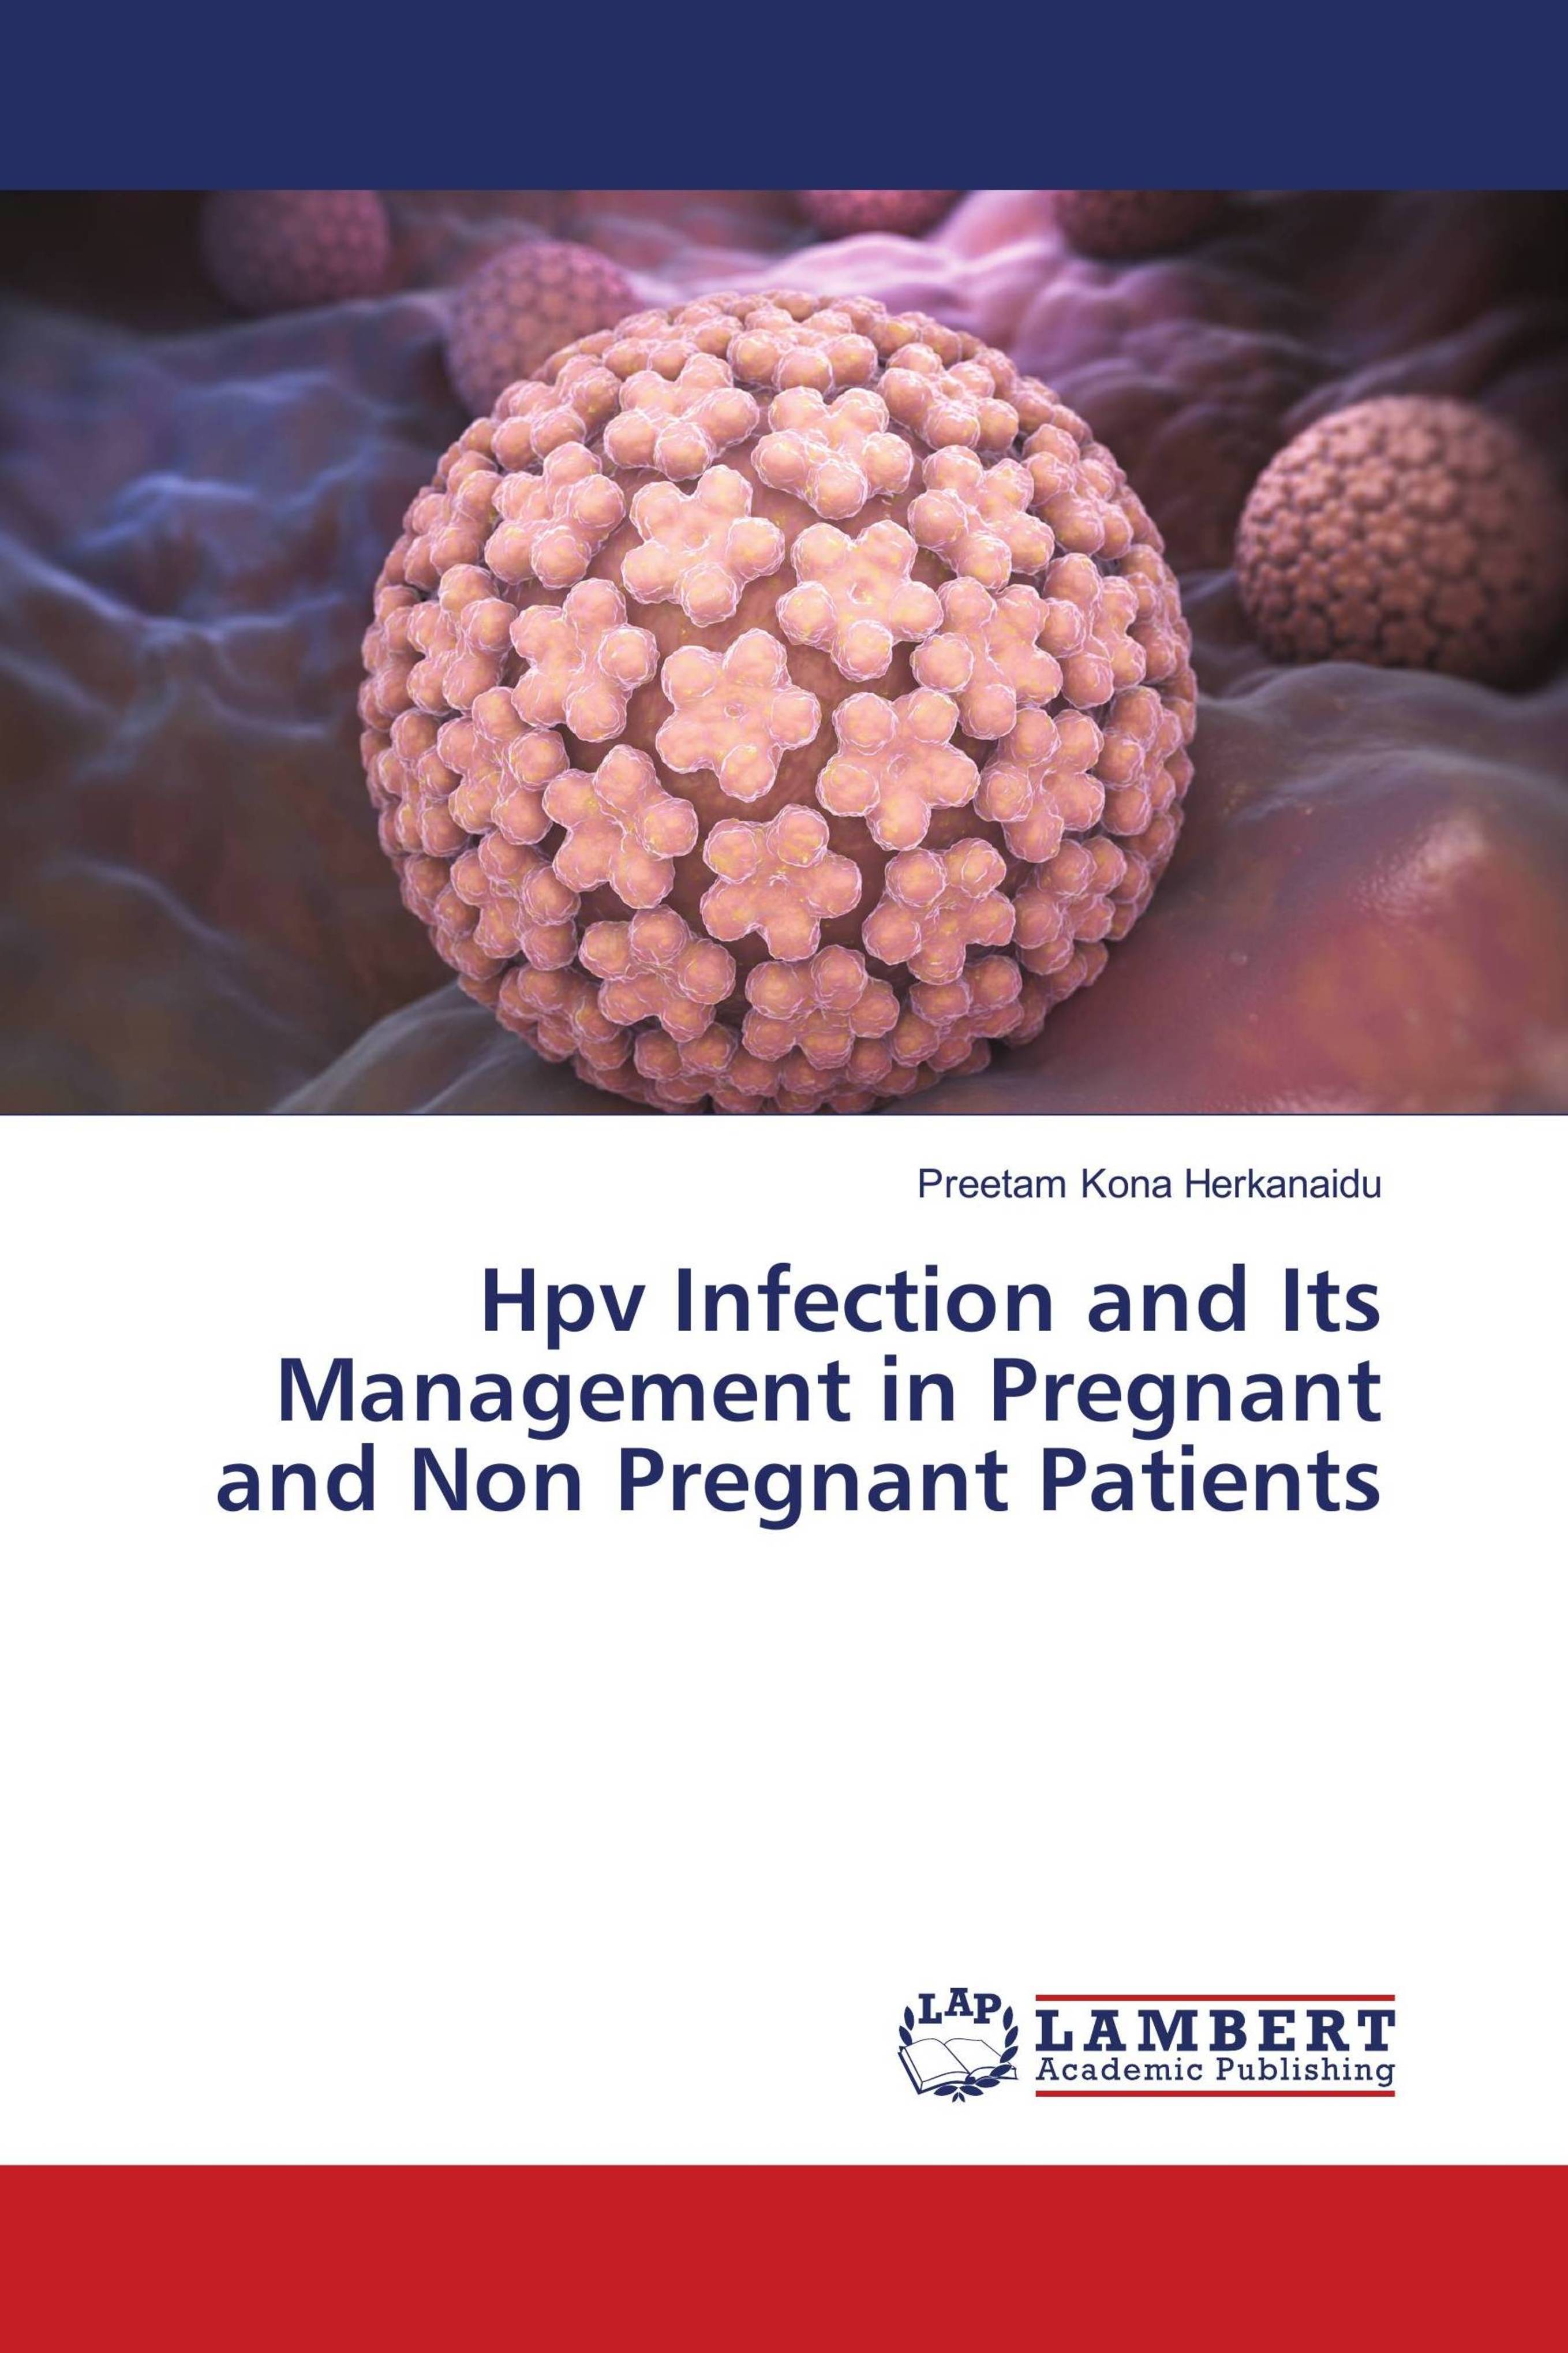 human papillomavirus infection in pregnancy)